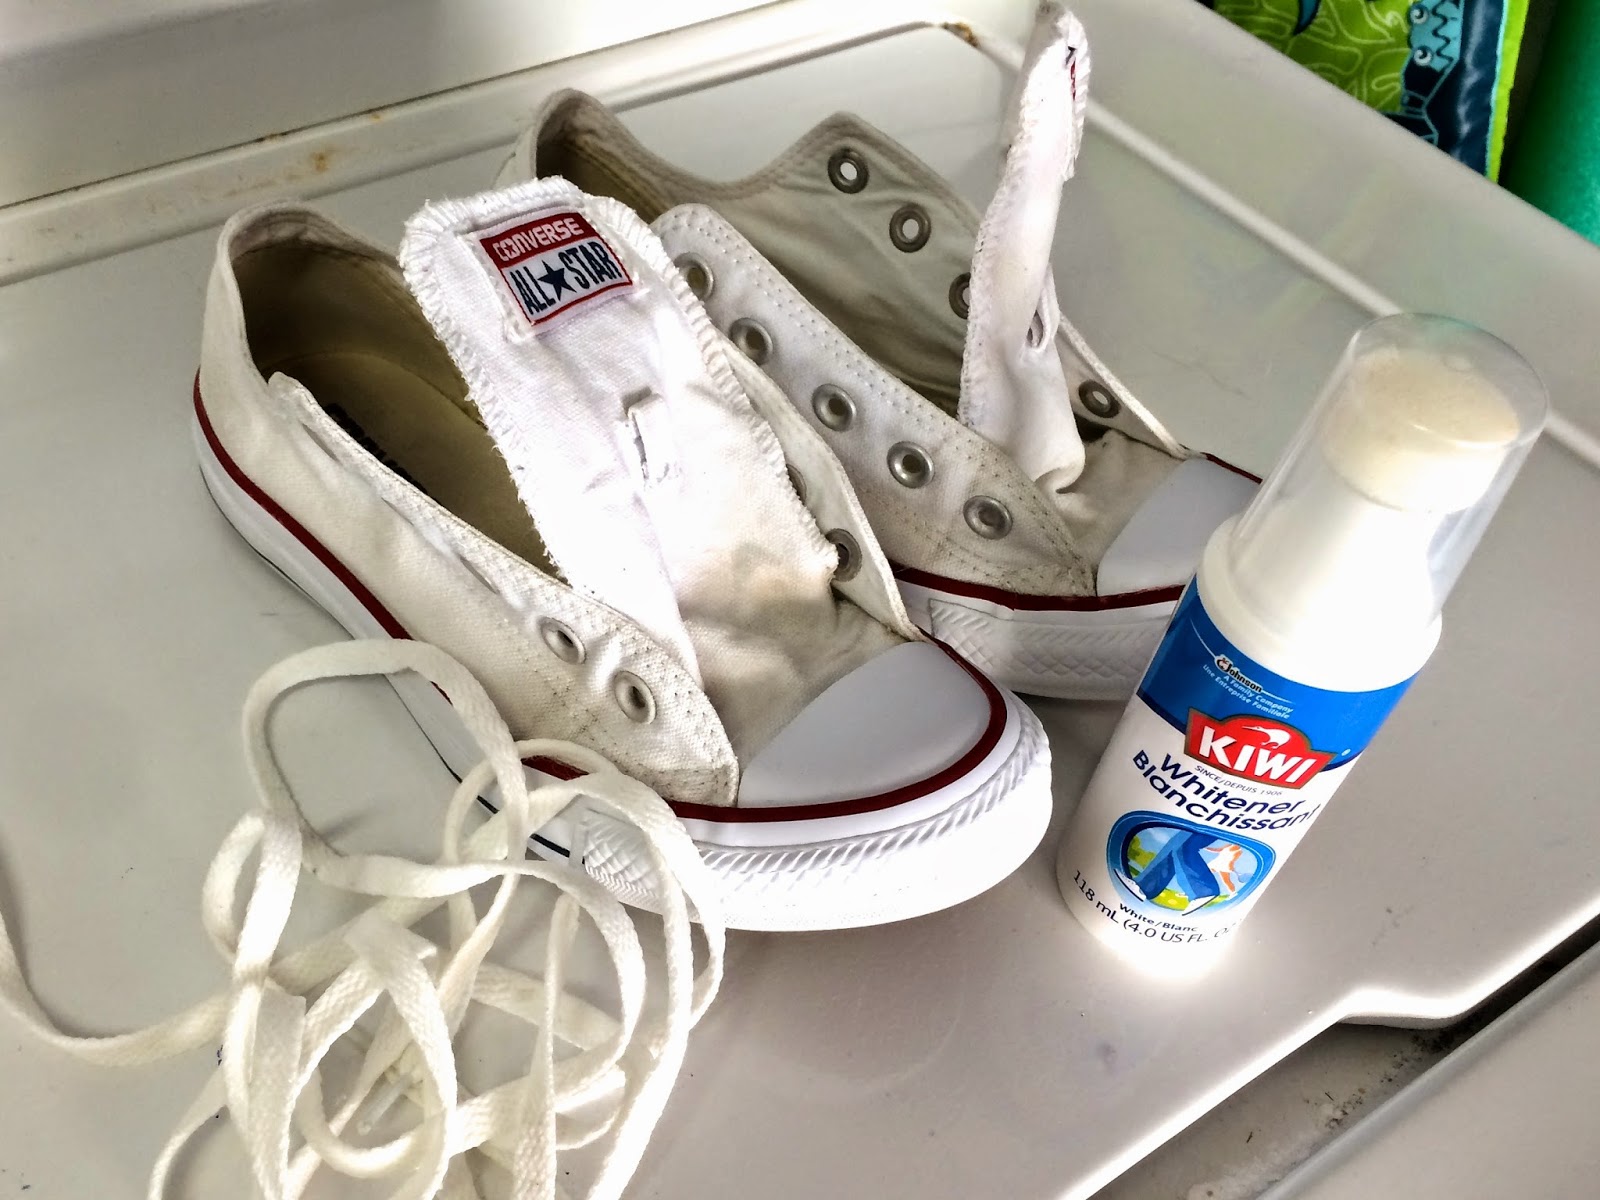 Как очистить белую подошву кроссовок в домашних условиях от желтизны и грязи